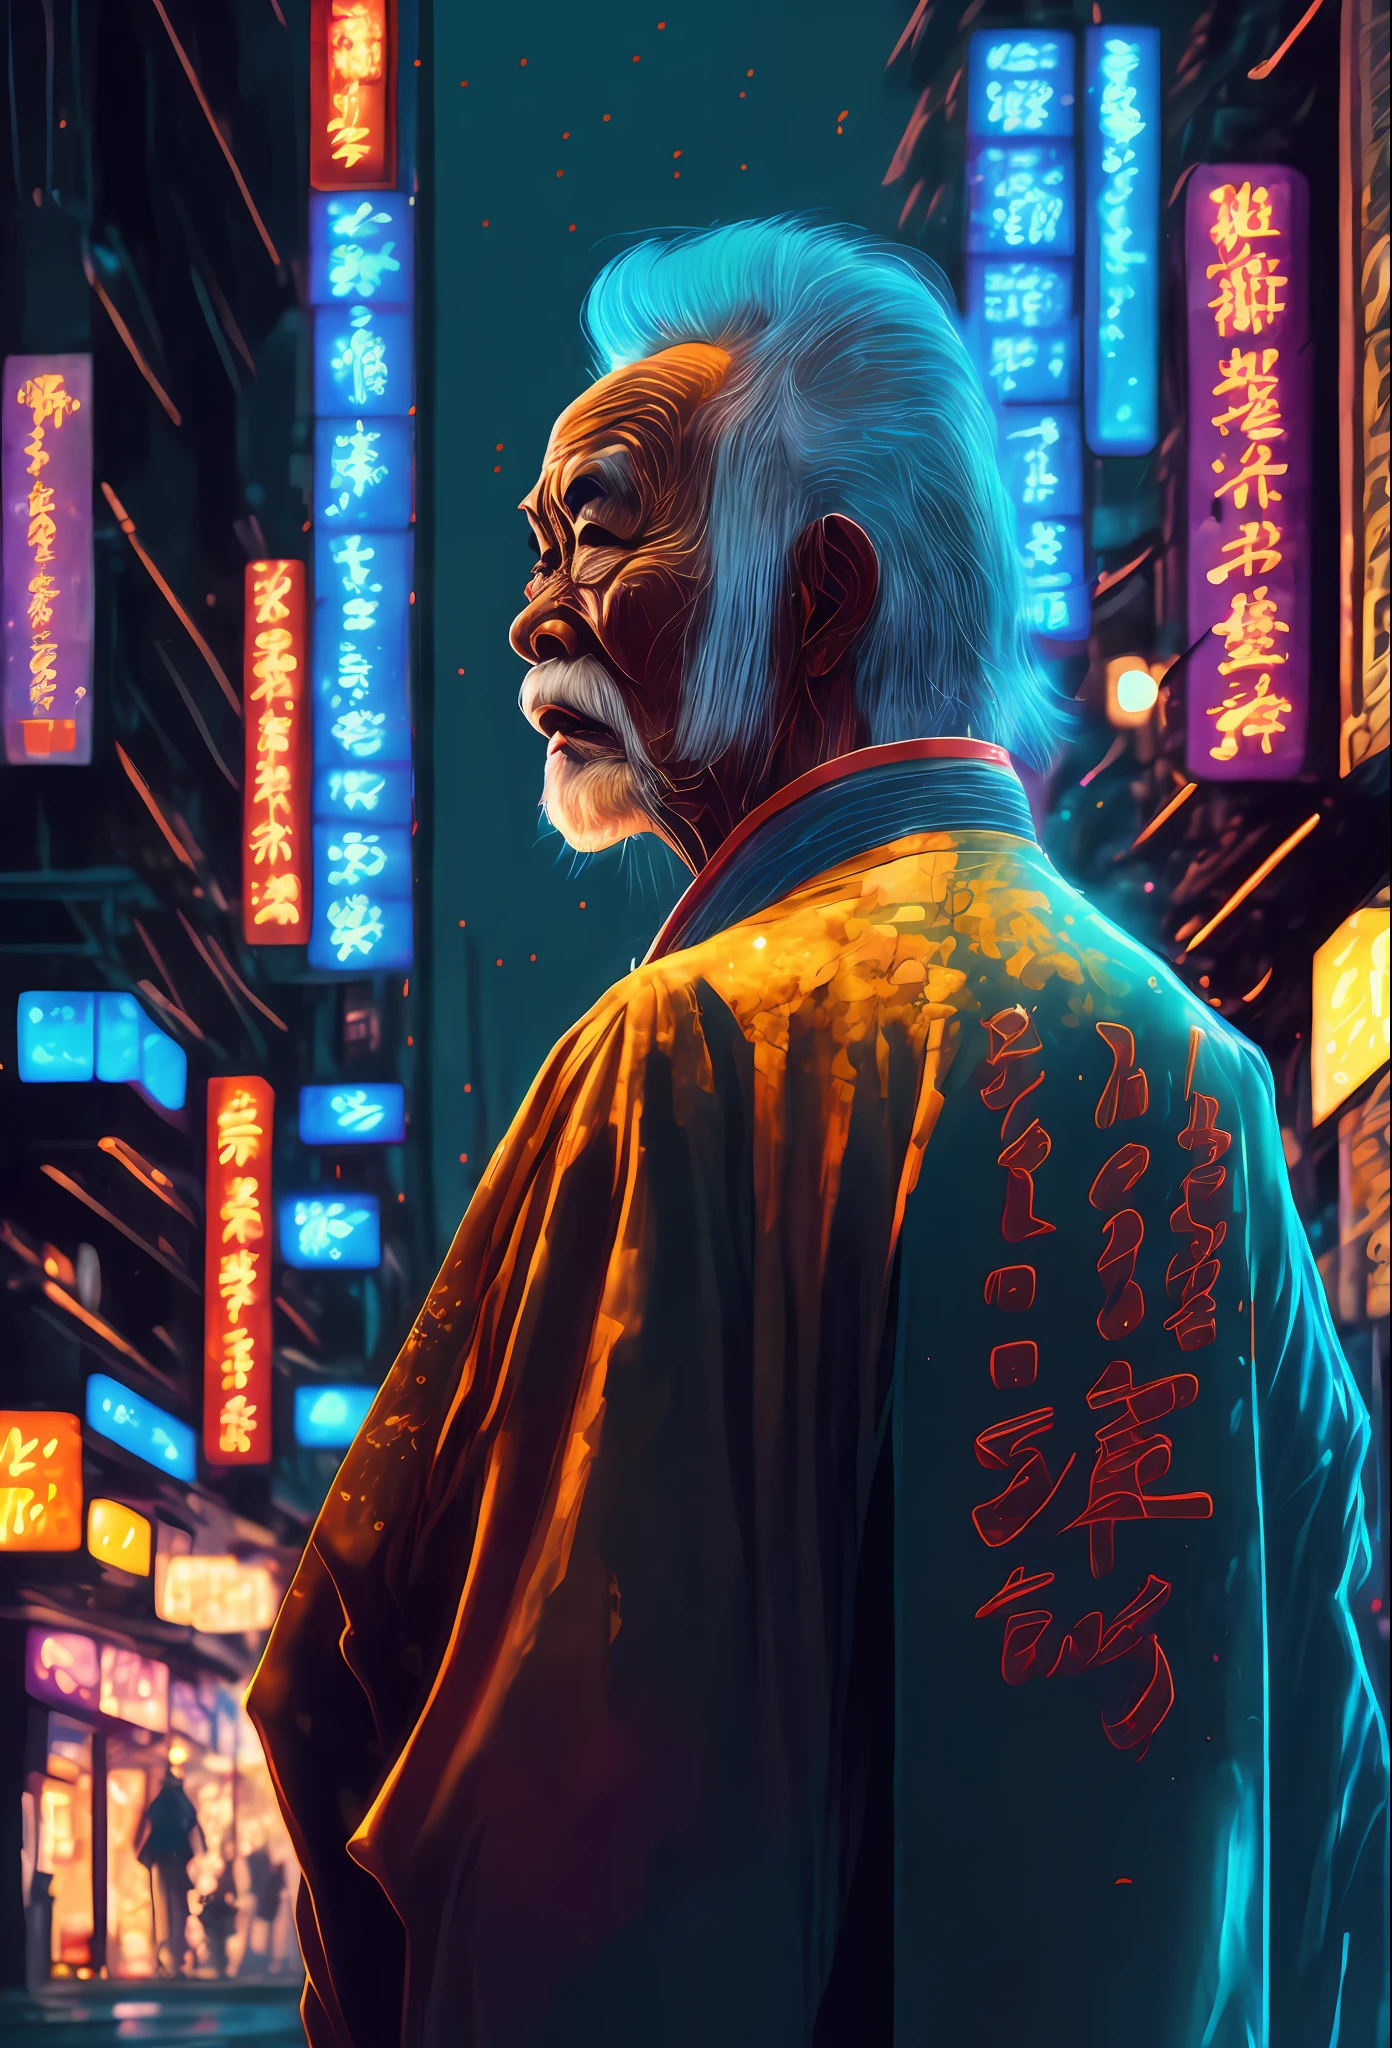 一位穿著和服的亞洲老人在城市街道上扮演賽博龐克角色. 夜晚, 霓虹燈標示牌, 日文寫作, 未來派, 概念藝術, 繪畫, 照亮, 特寫, 詳細的, 發光的.